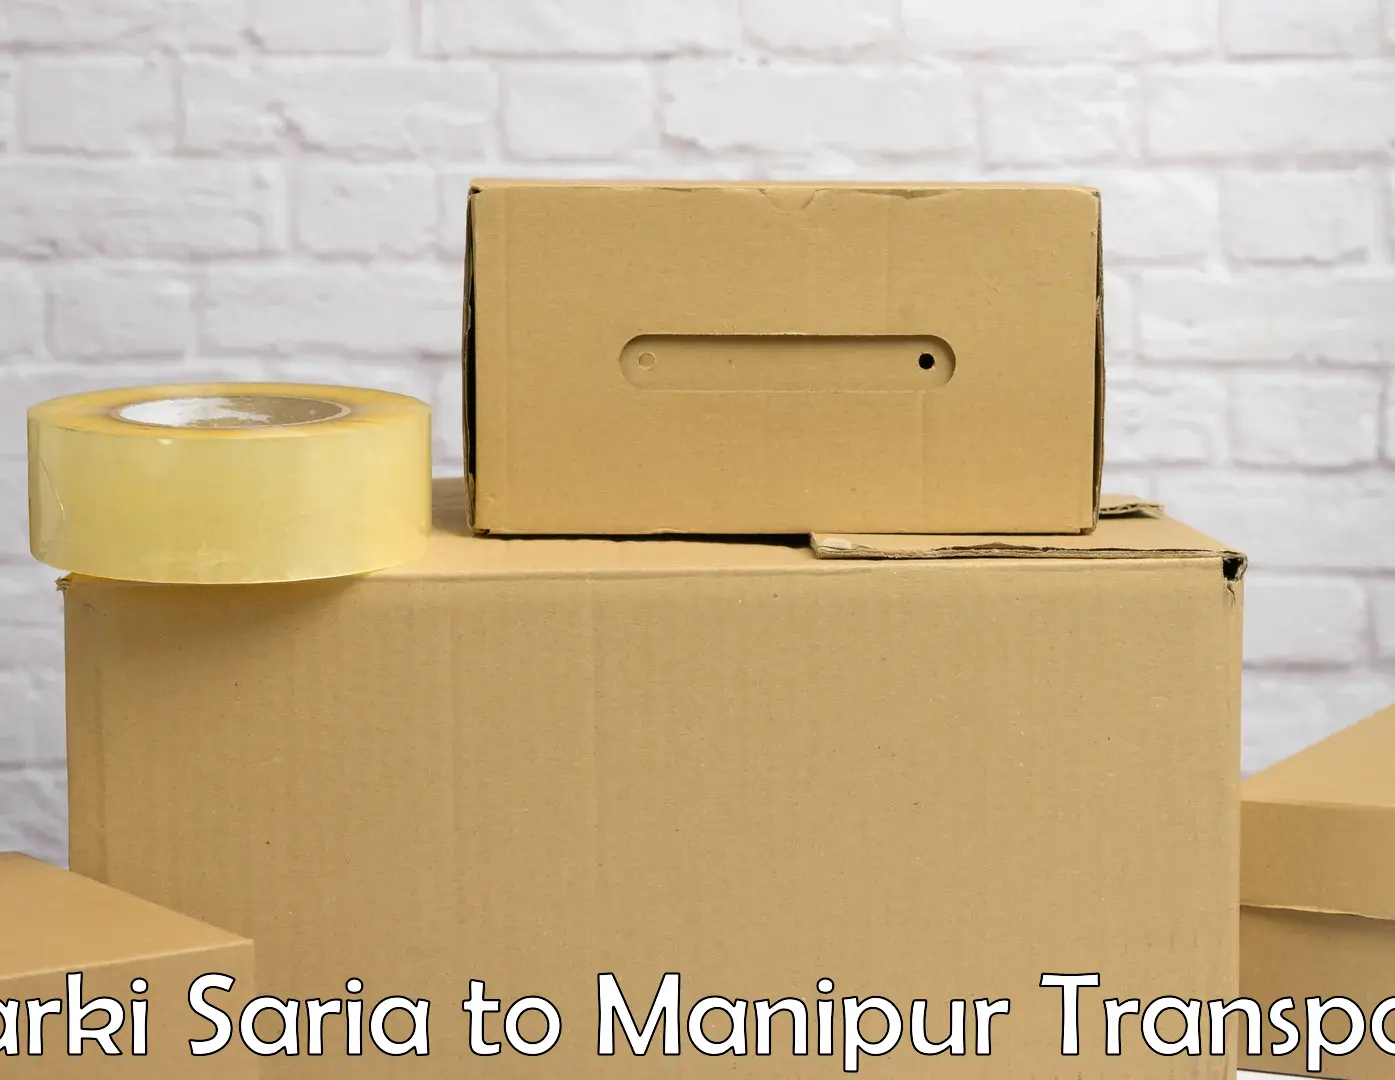 Road transport online services Barki Saria to Churachandpur